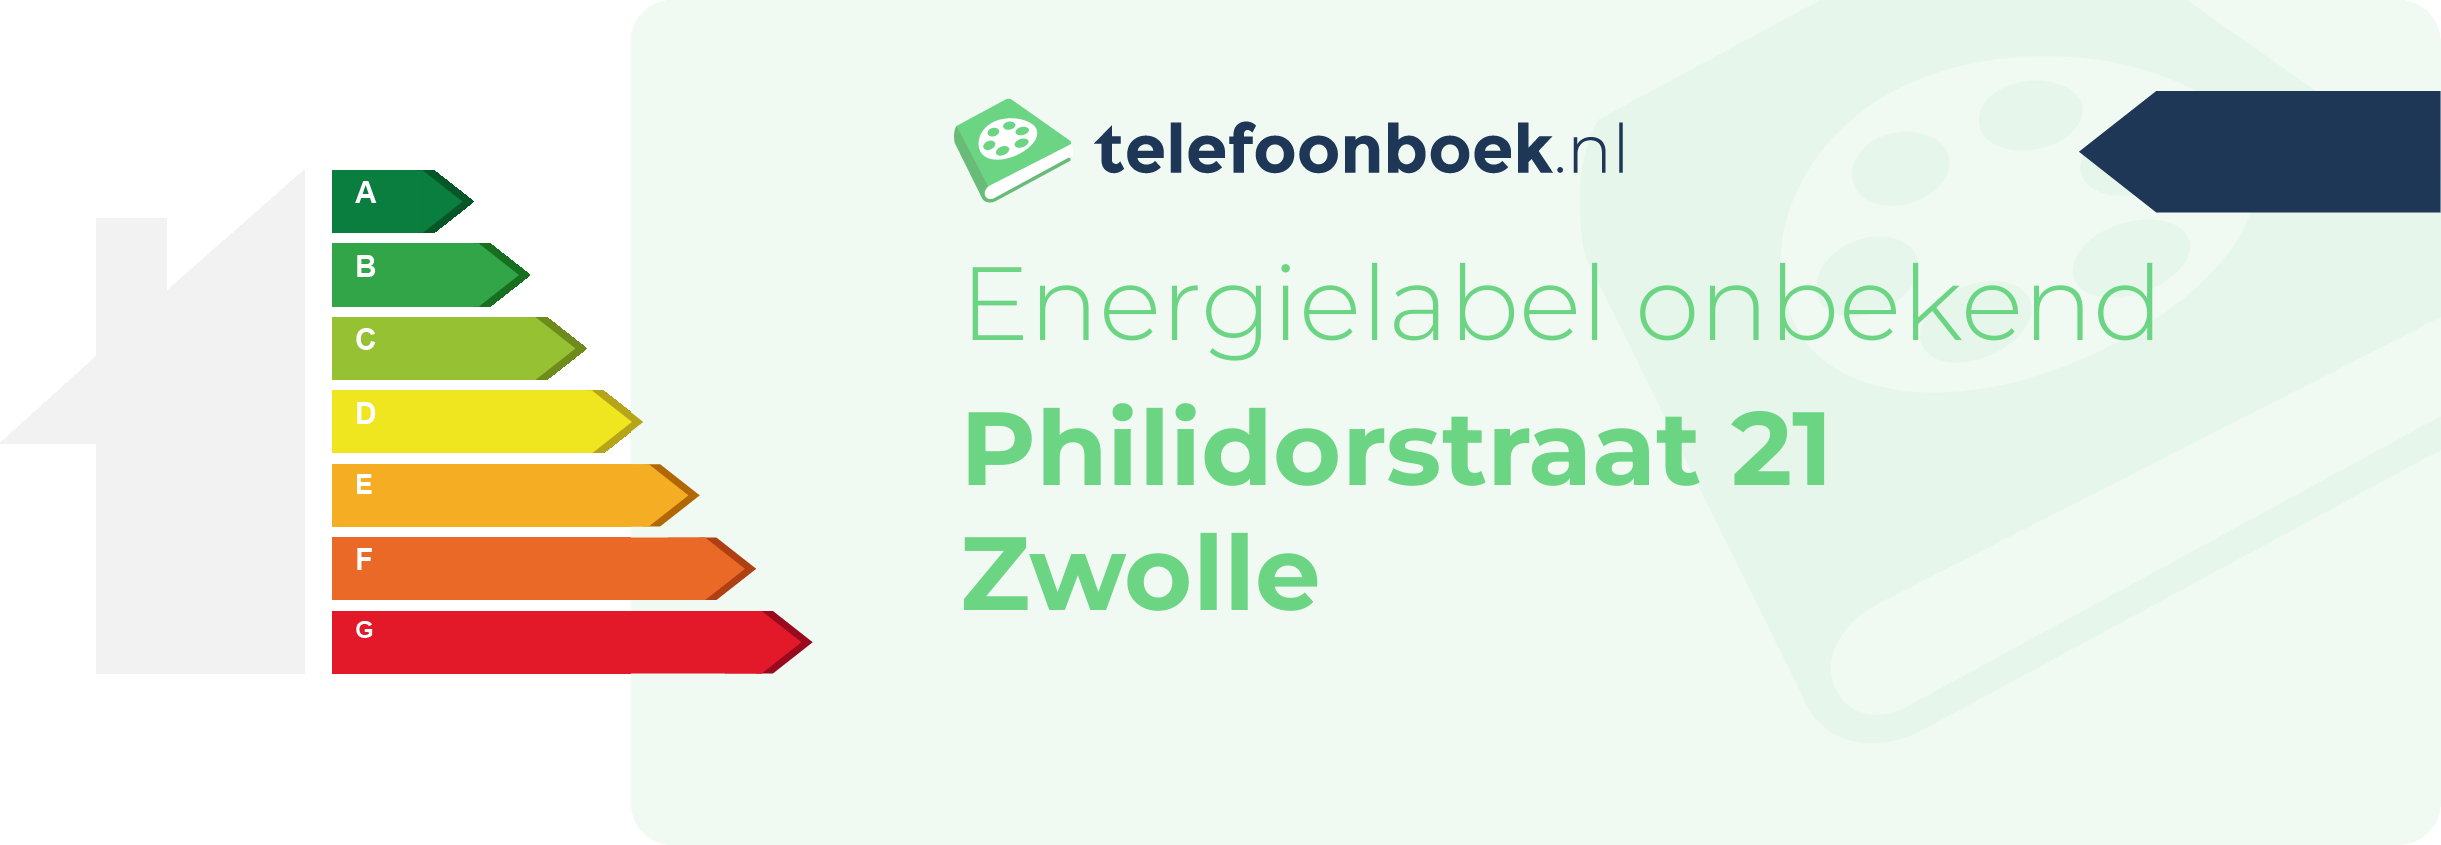 Energielabel Philidorstraat 21 Zwolle